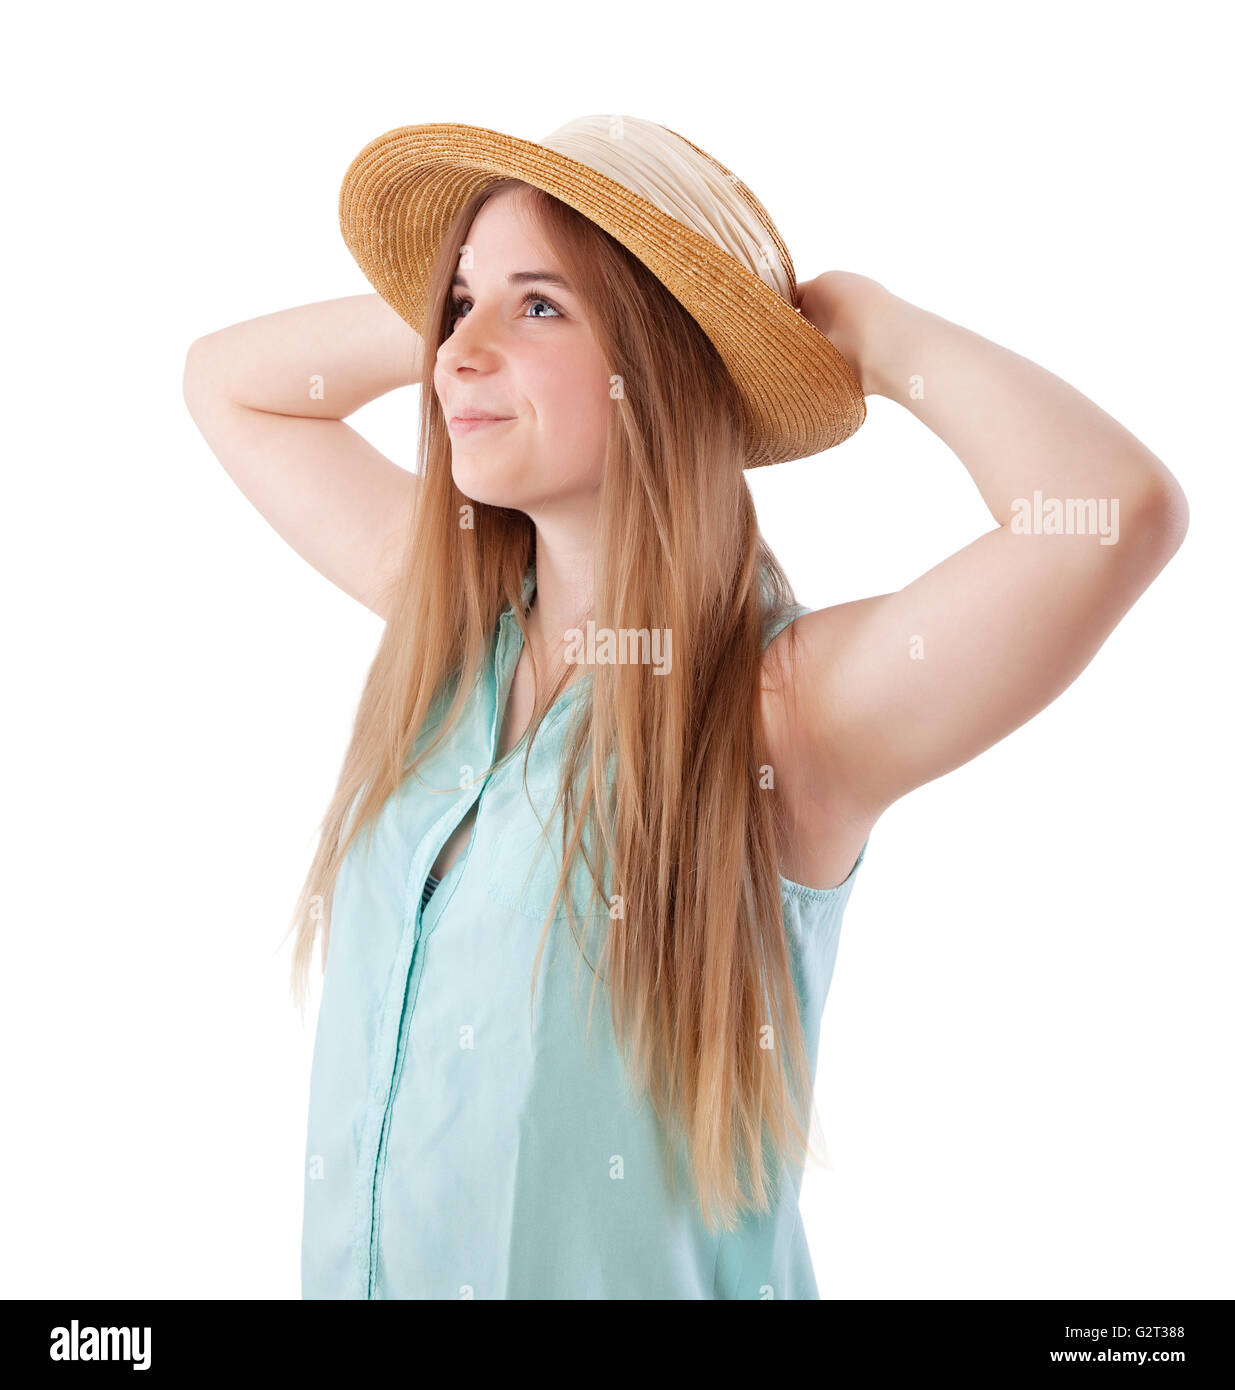 teenage girl wearing sun hat Stock Photo